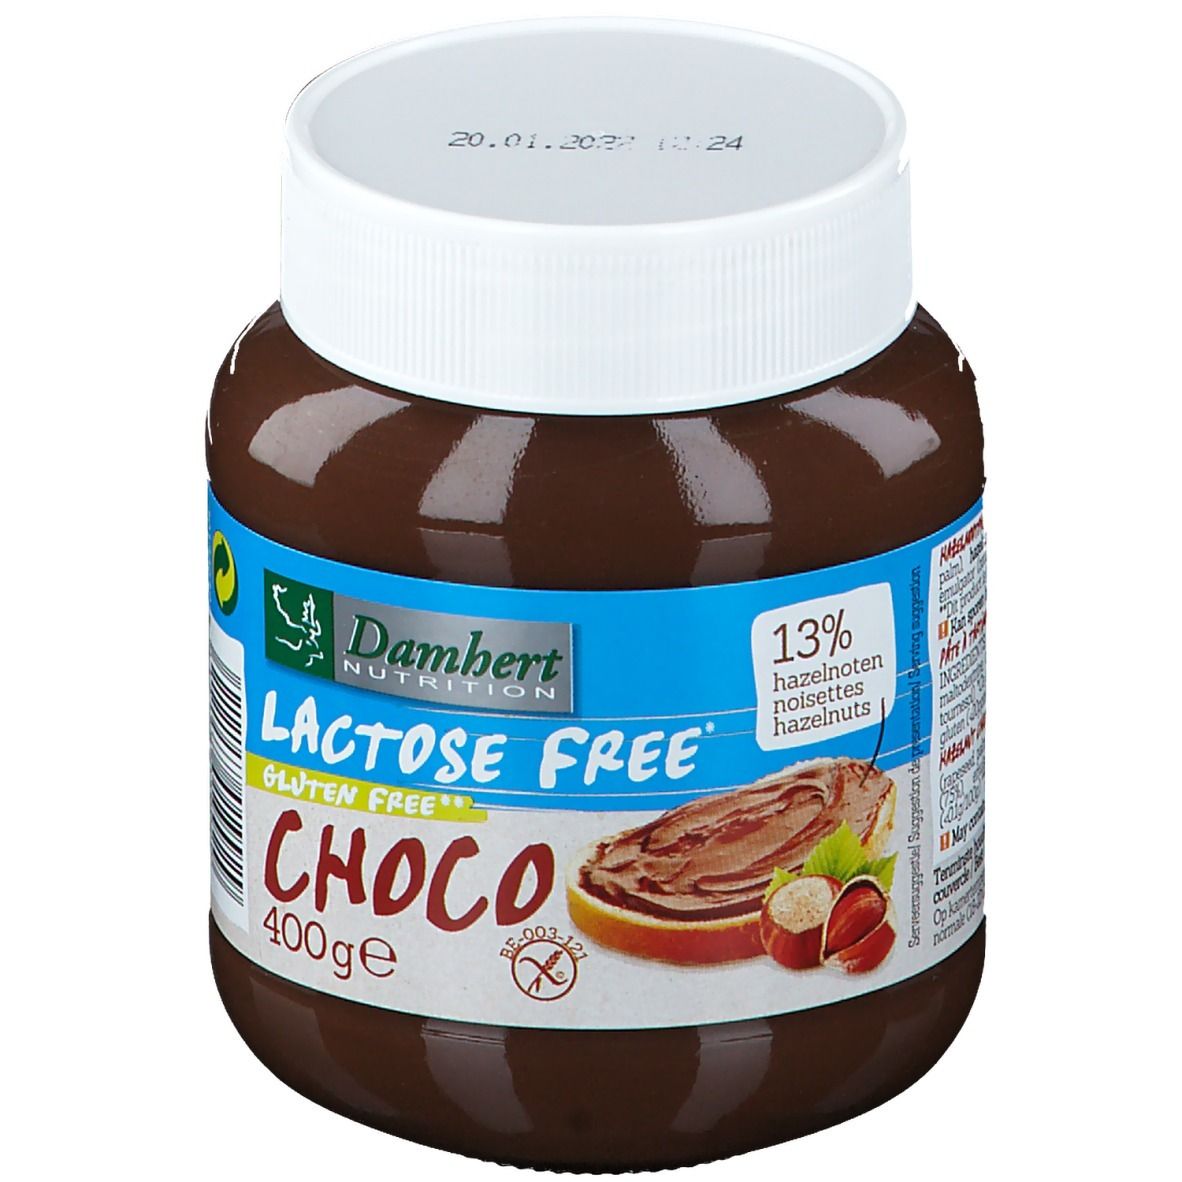 Damhert Choco Paste Lactose Free